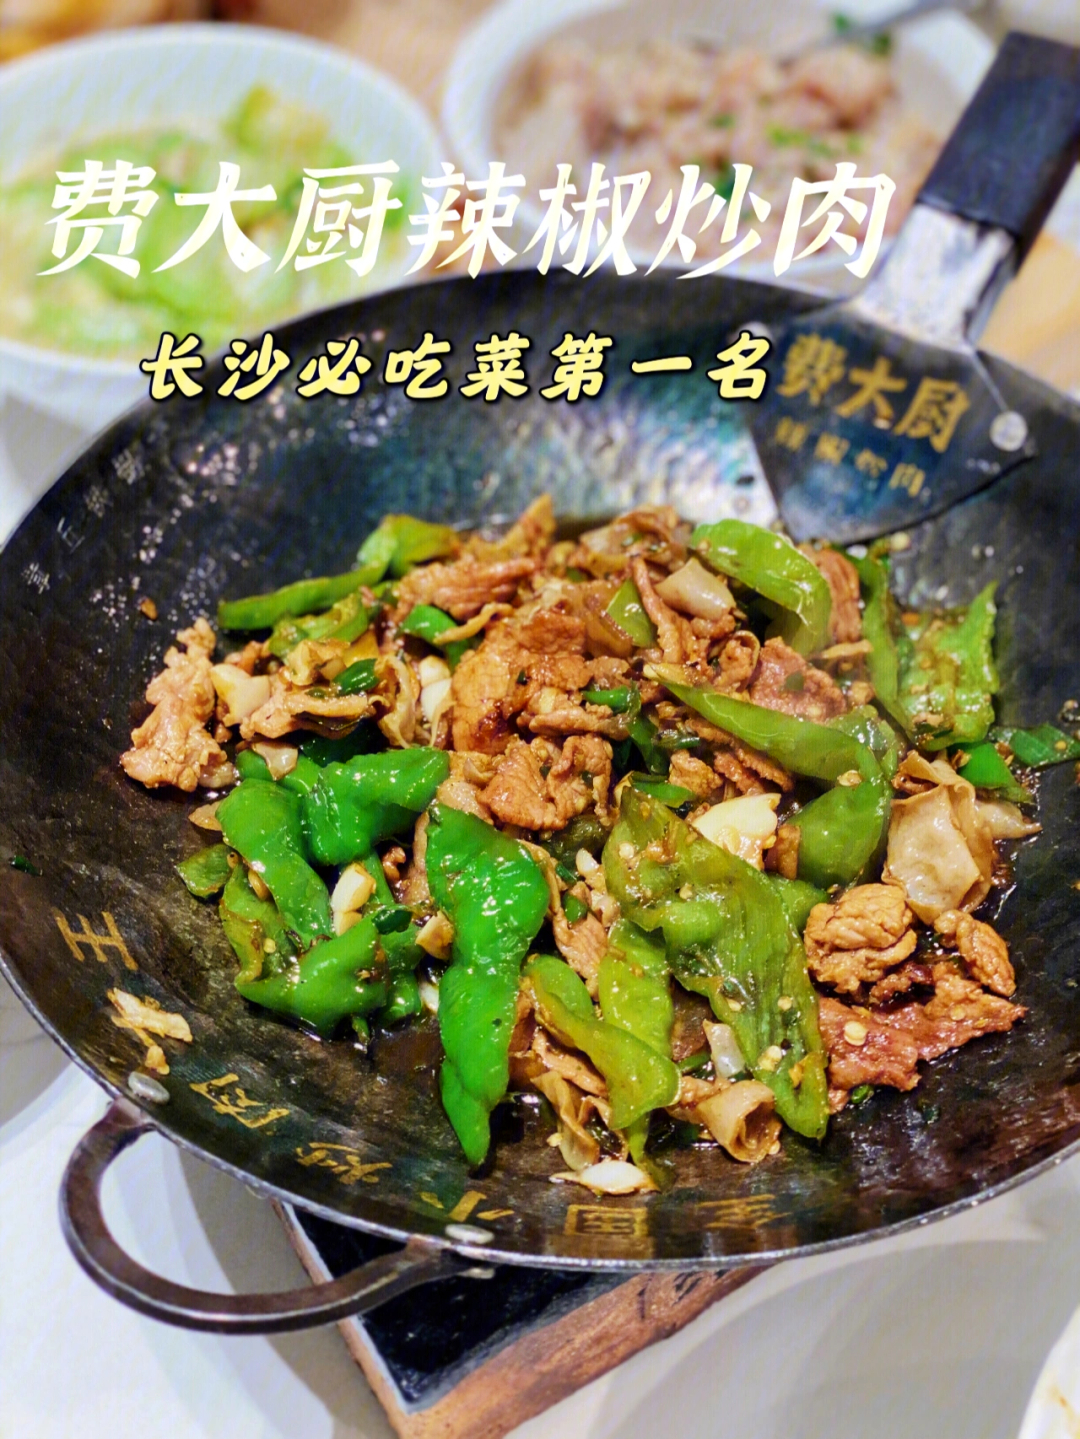 费大厨辣椒炒肉的广告宣传海报了据说这家的湘菜可是湖南本土正宗的